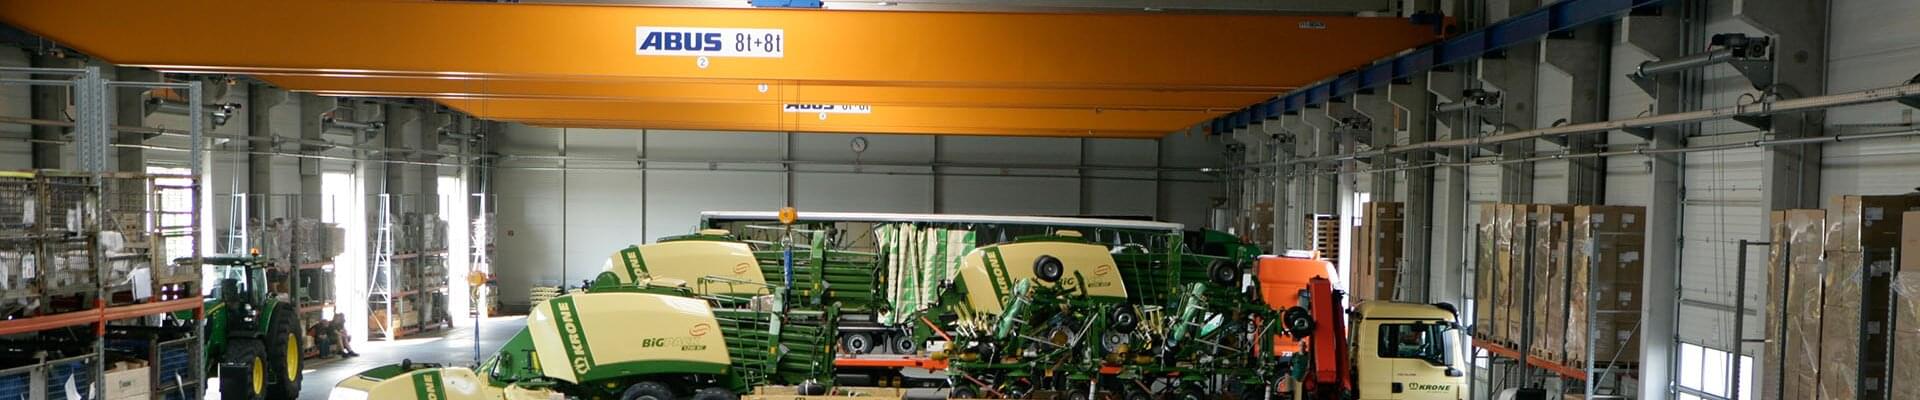 Kraan met draagvermogen van 8 t en 8 t in productiehal voor landbouwtechniek in Duitsland